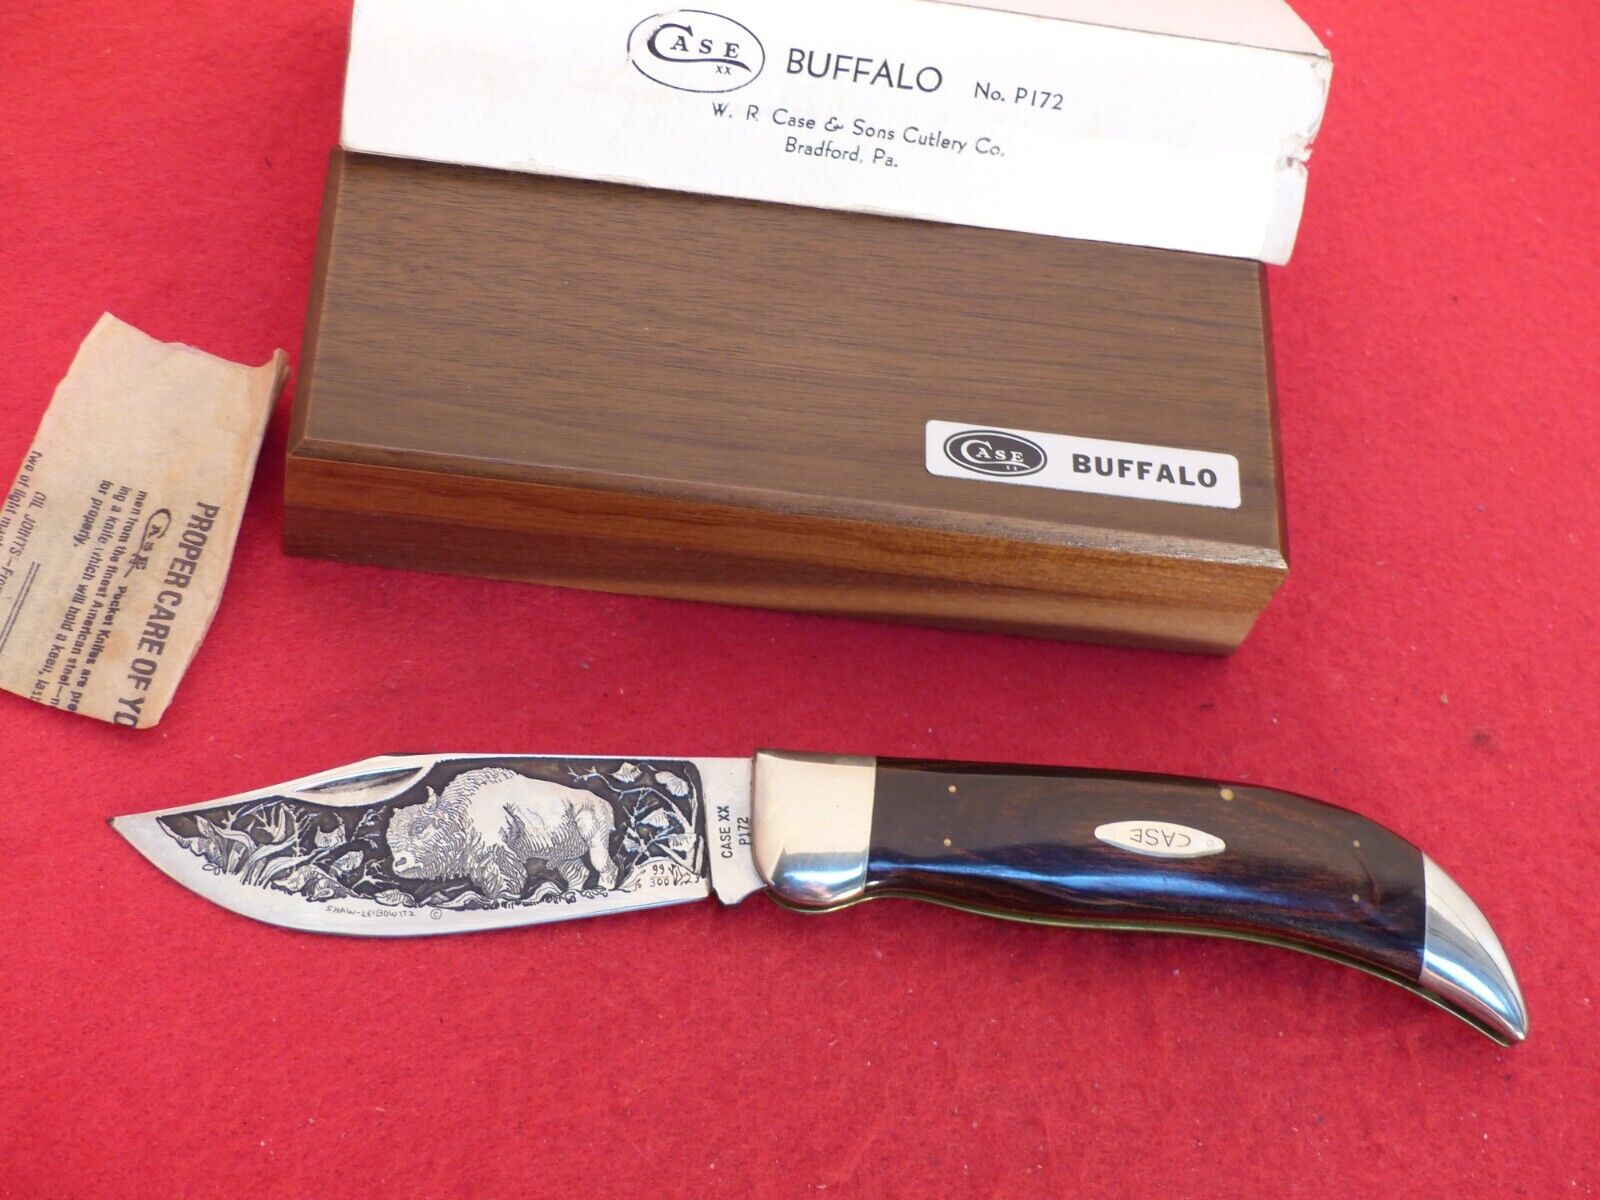 Case XX USA Buffalo Shaw Leibowitz etch mint Buffalo knife in walnut display box